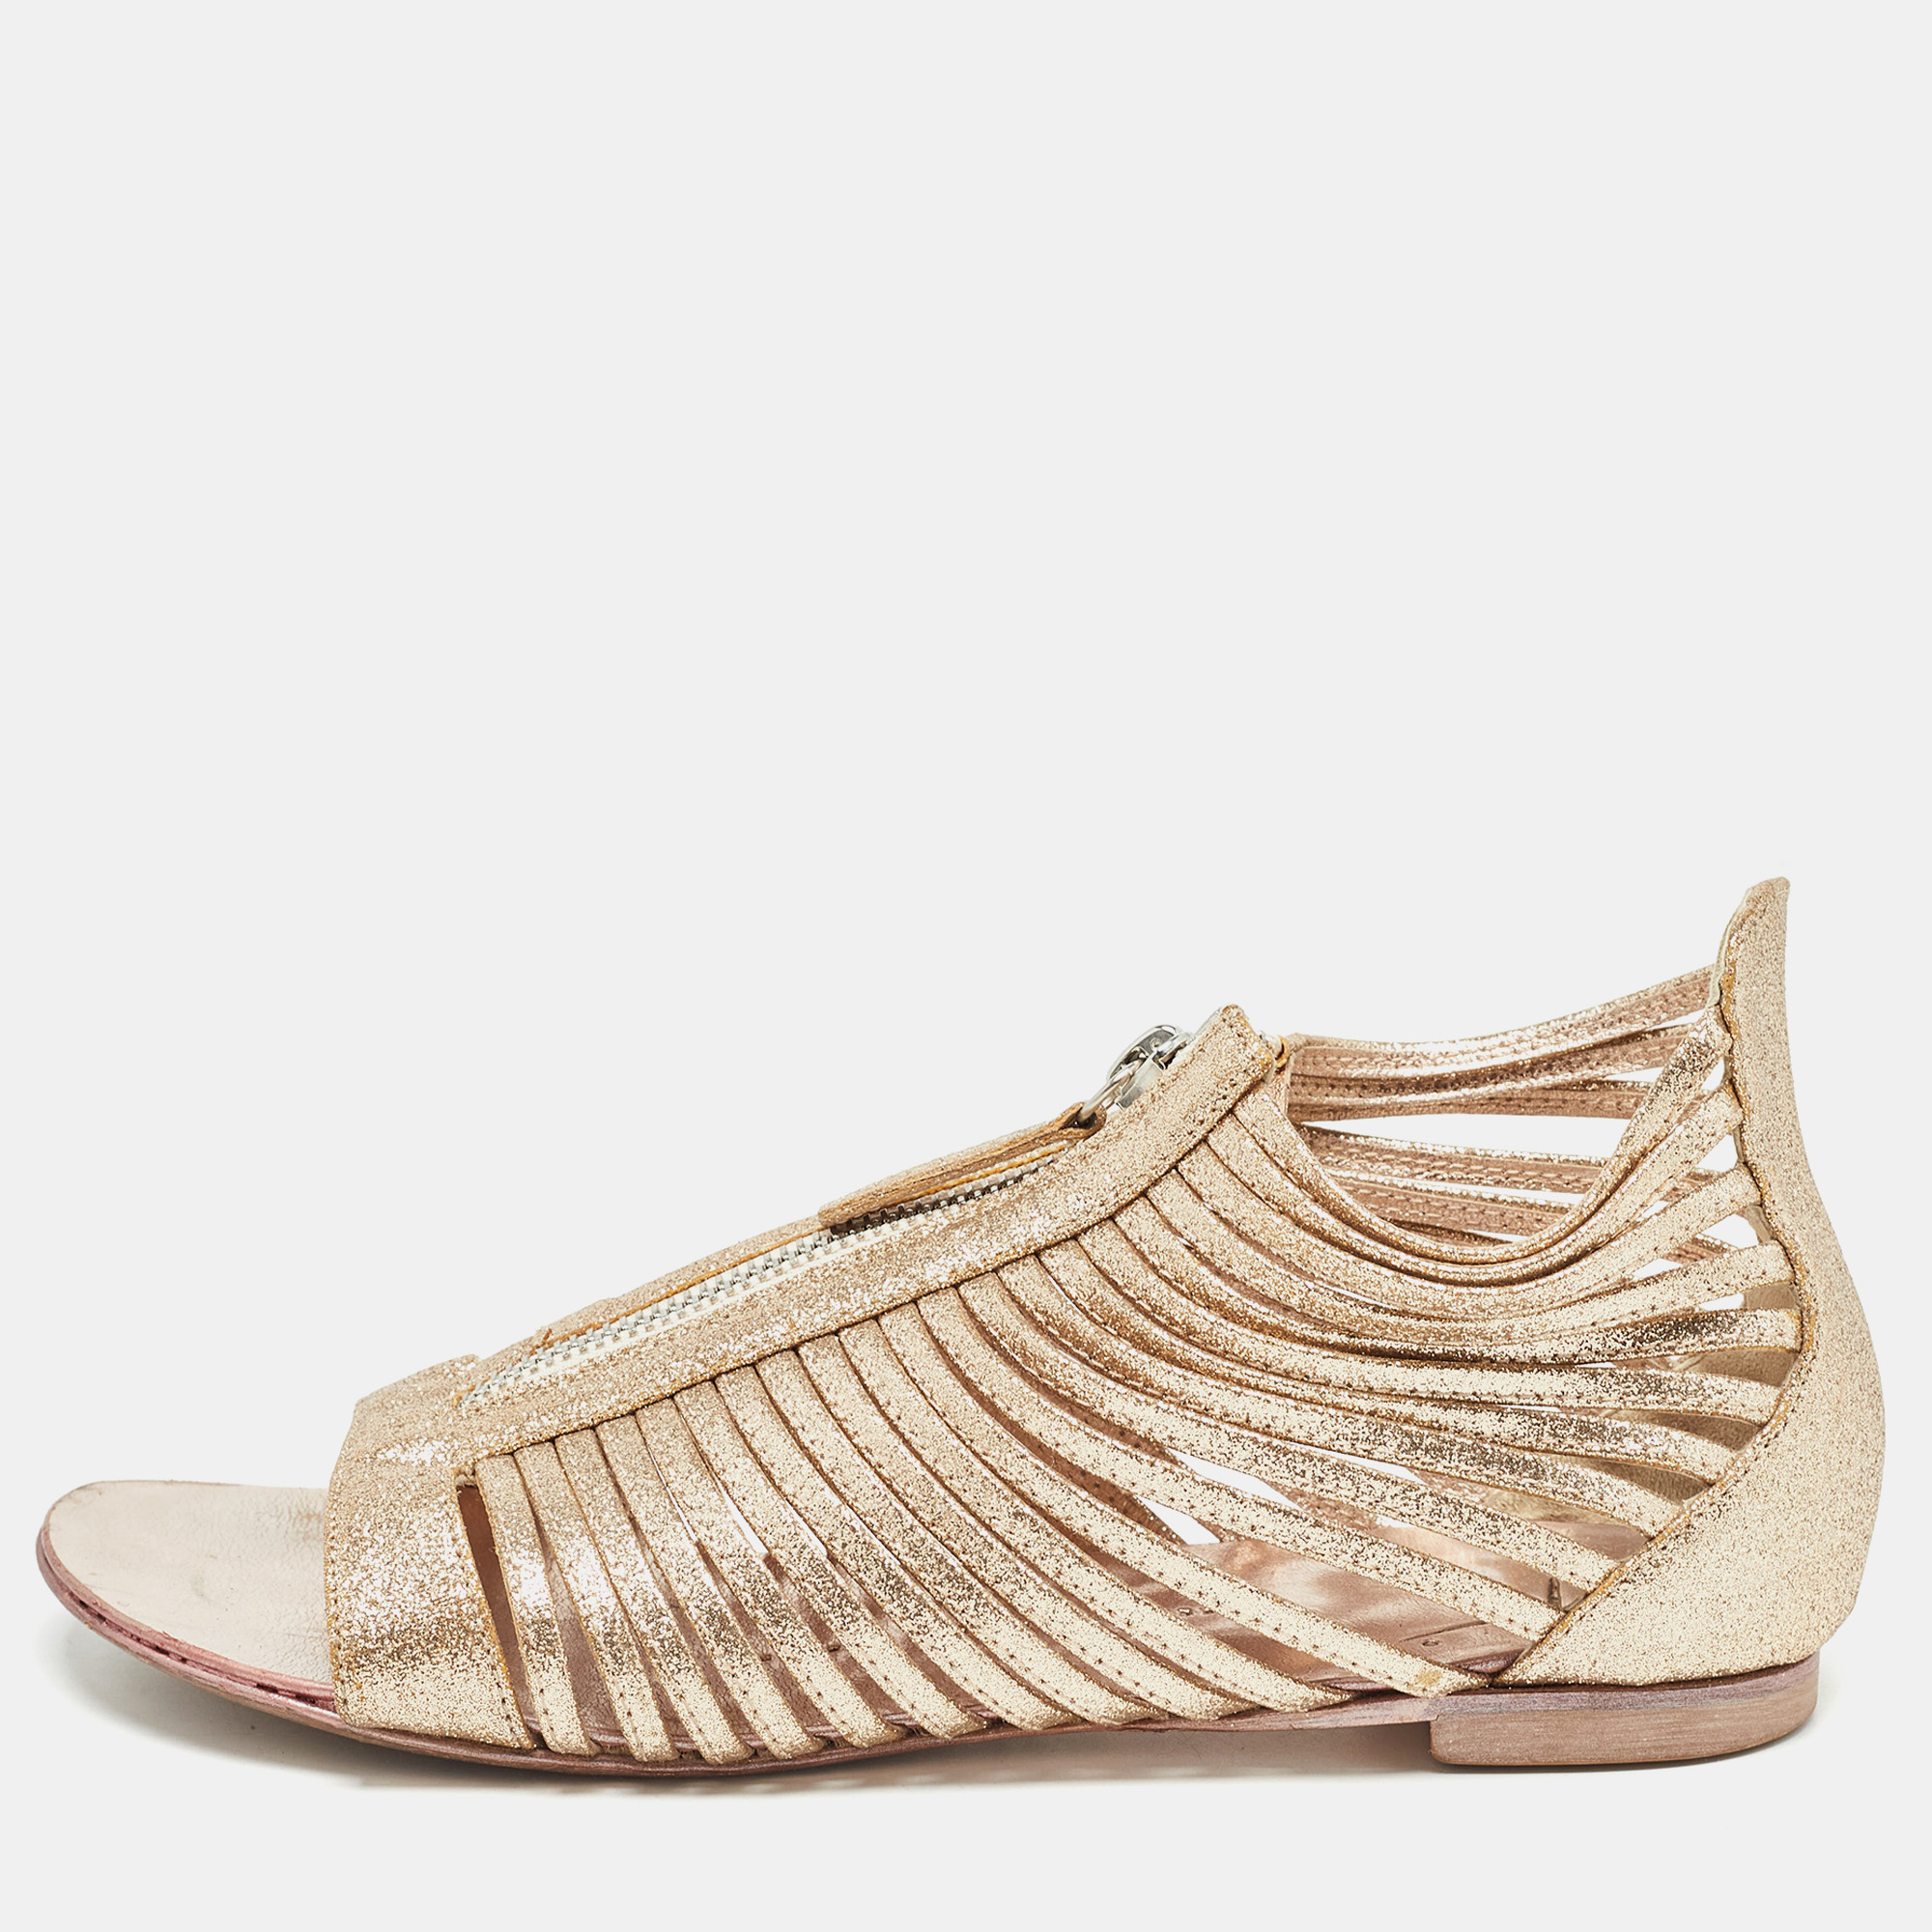 Giuseppe zanotti gold glitter zipped caged flat sandals size 36